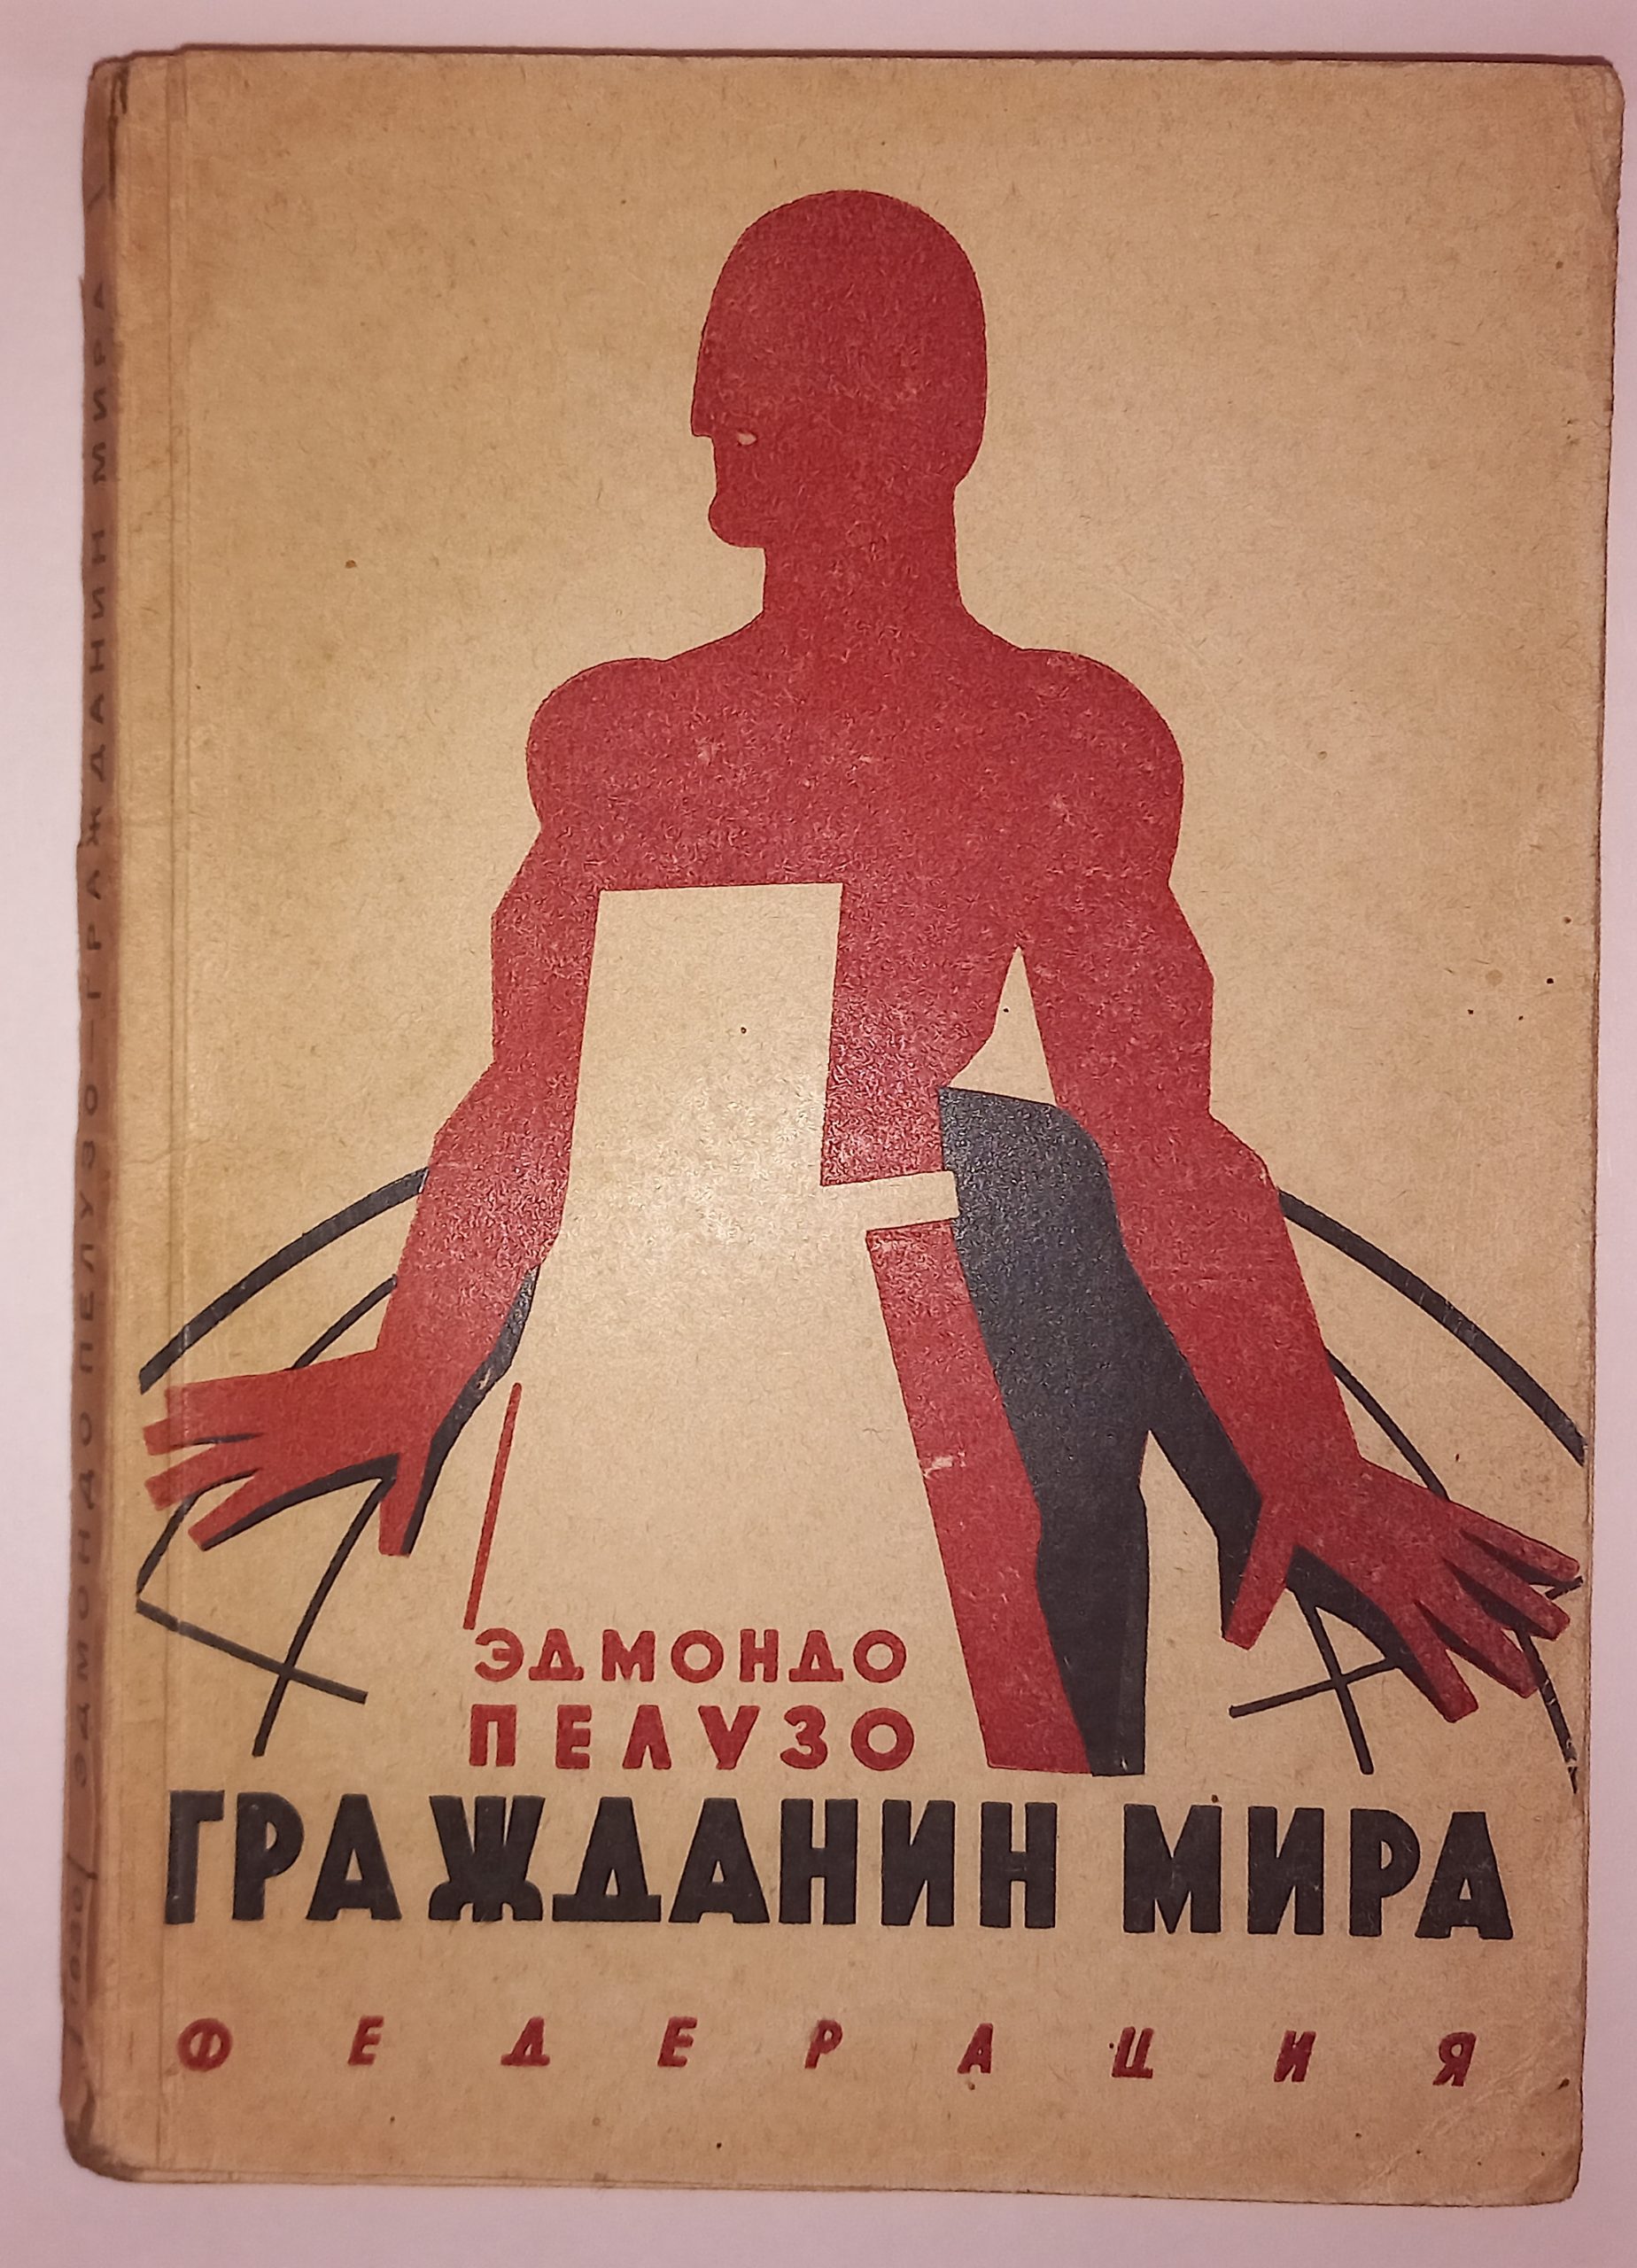 Svelata la copertina di “Cittadino del mondo” (1930) di Edmondo Peluso: pioniere del comunismo italiano emigrato in URSS